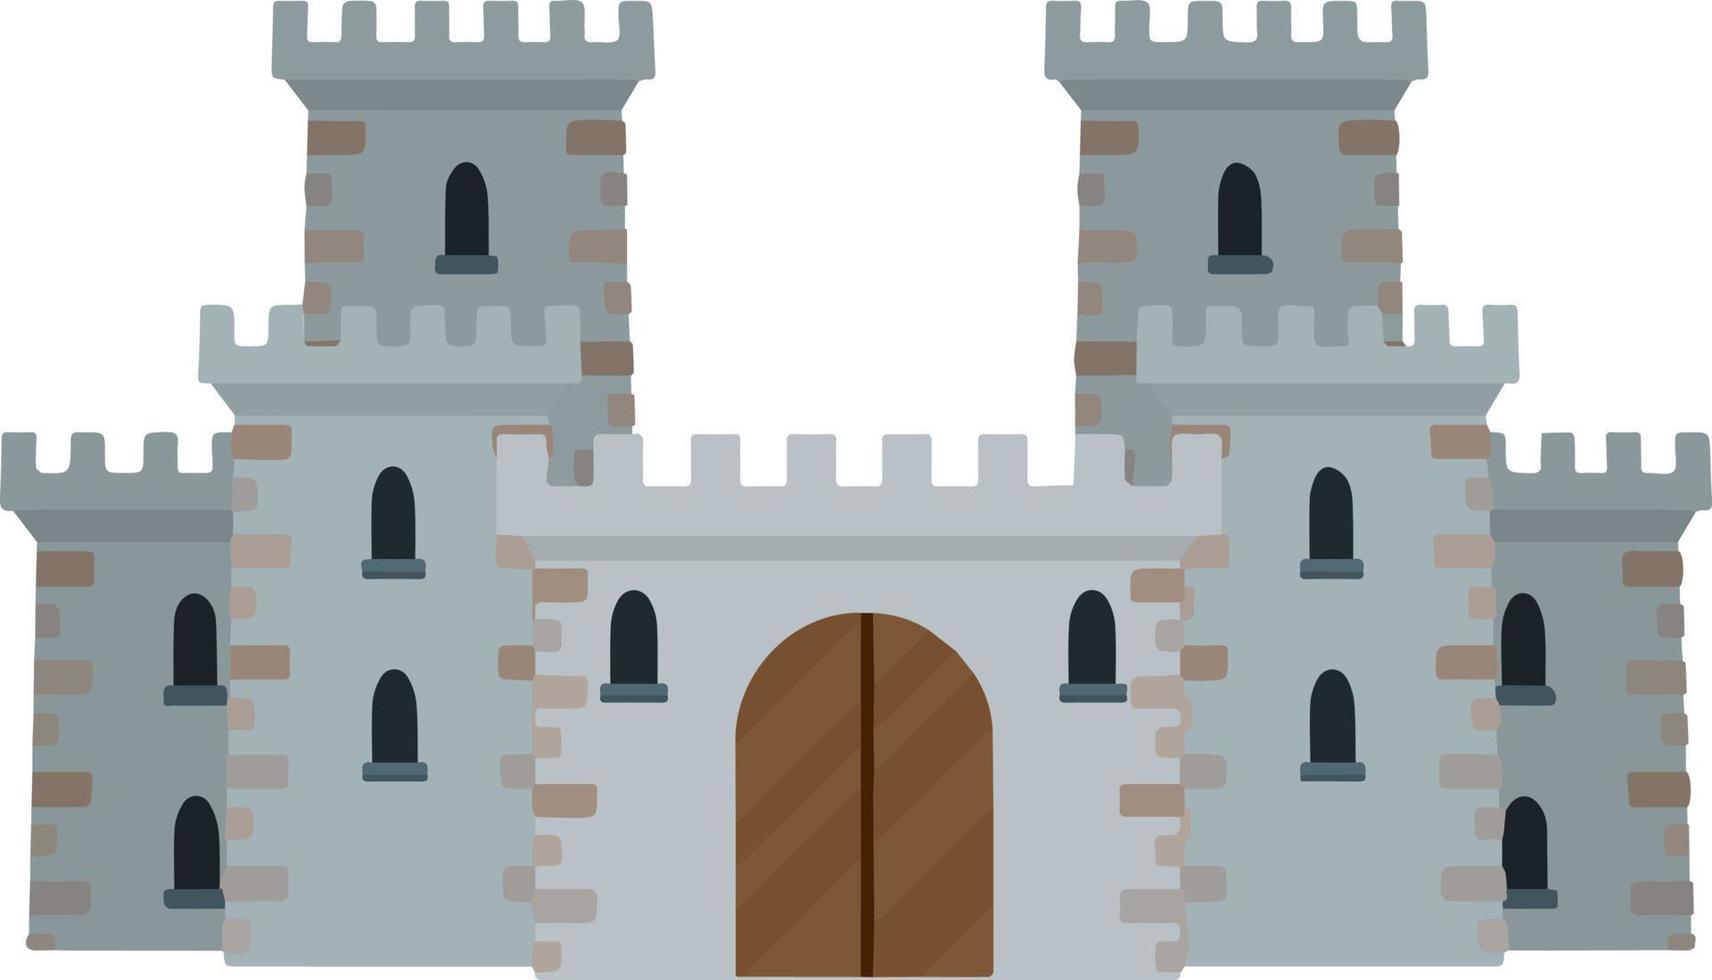 castello di pietra europeo medievale. fortezza dei cavalieri. concetto di sicurezza, protezione e difesa. illustrazione piatta del fumetto. edificio militare con mura, portoni e grande torre. vettore